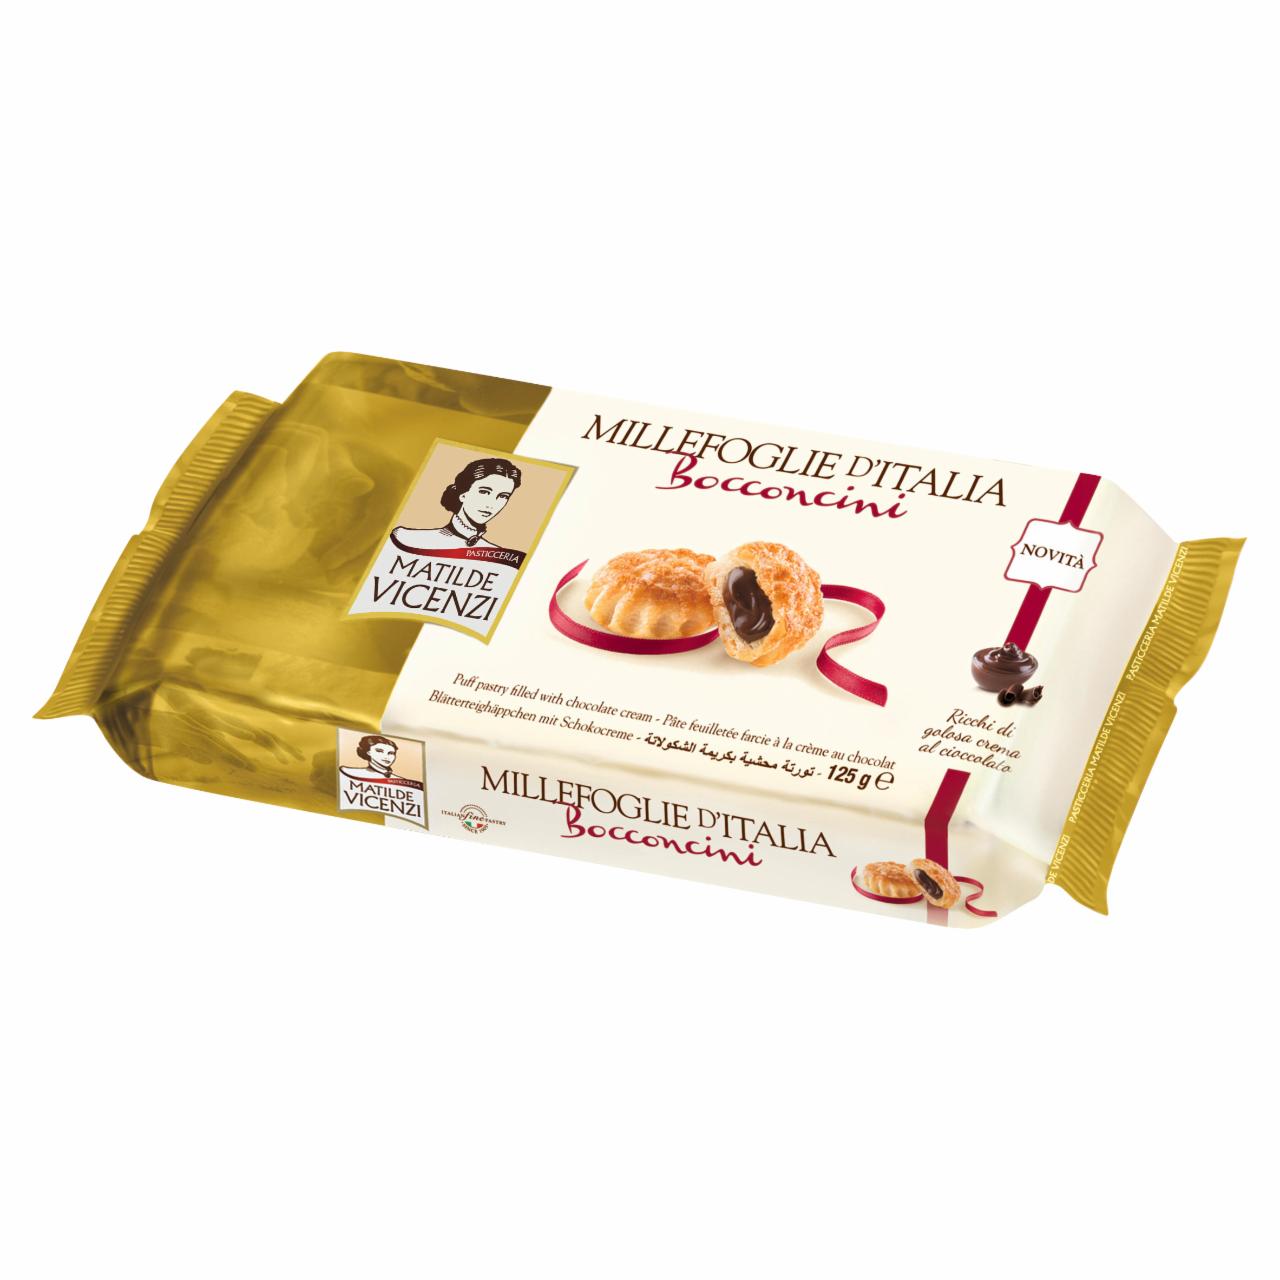 Képek - Vicenzi Bocconcini Choco Cream leveles tésztából készült sütemények csokoládés krémmel 16 db 125 g 